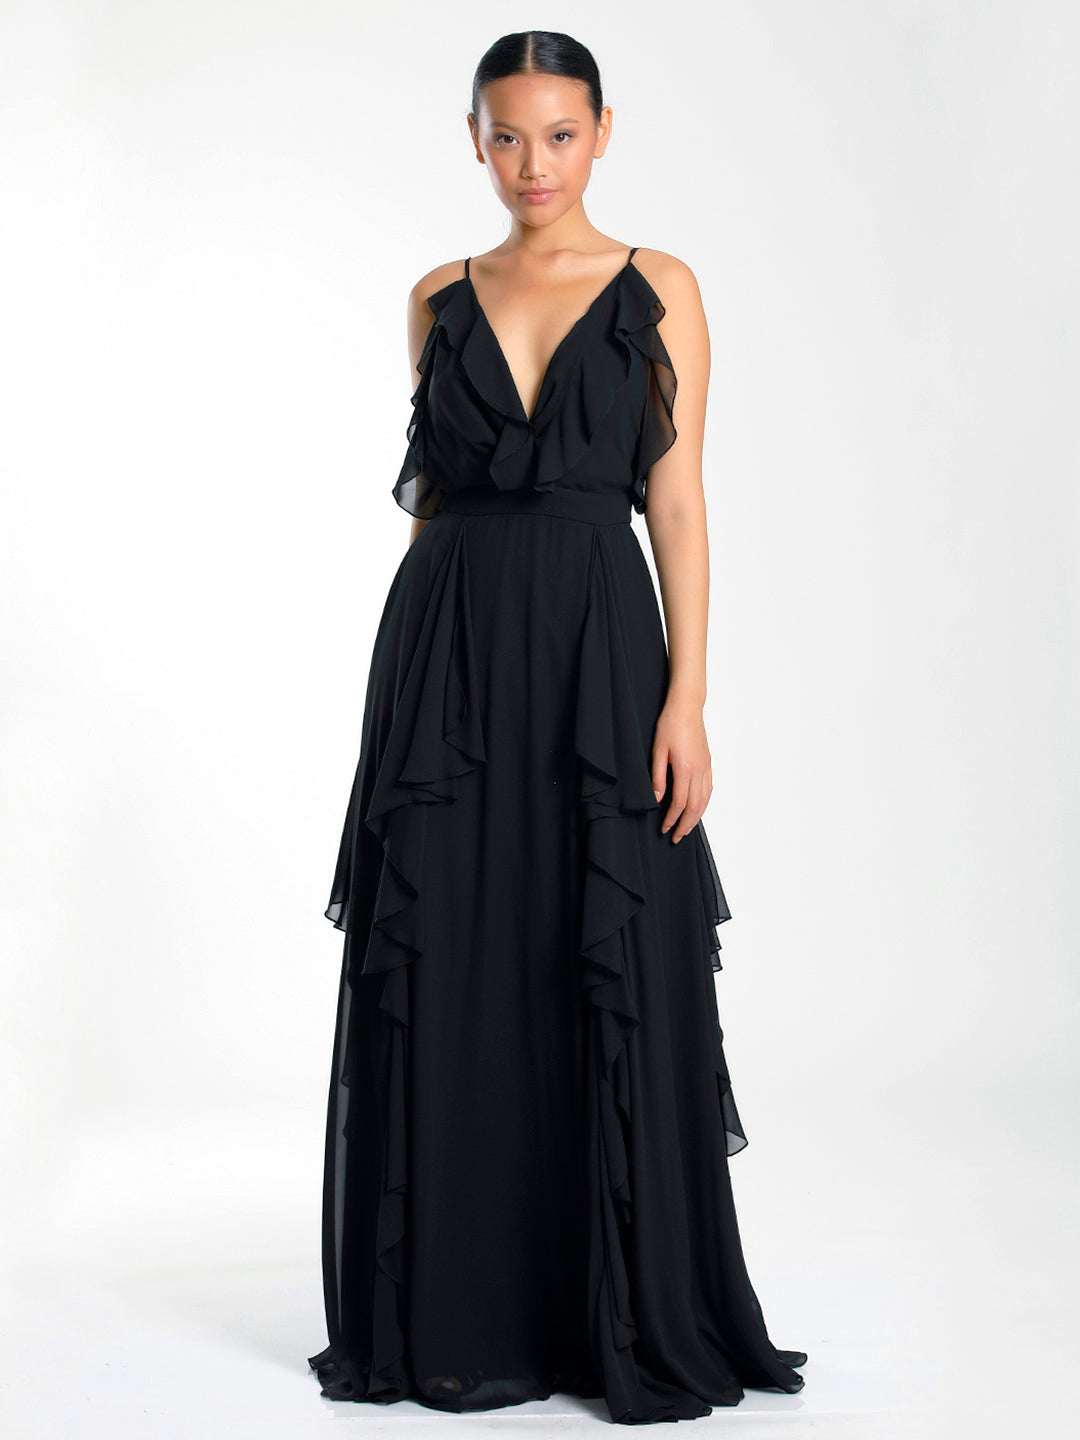 Ciara Ruffled Dress Black